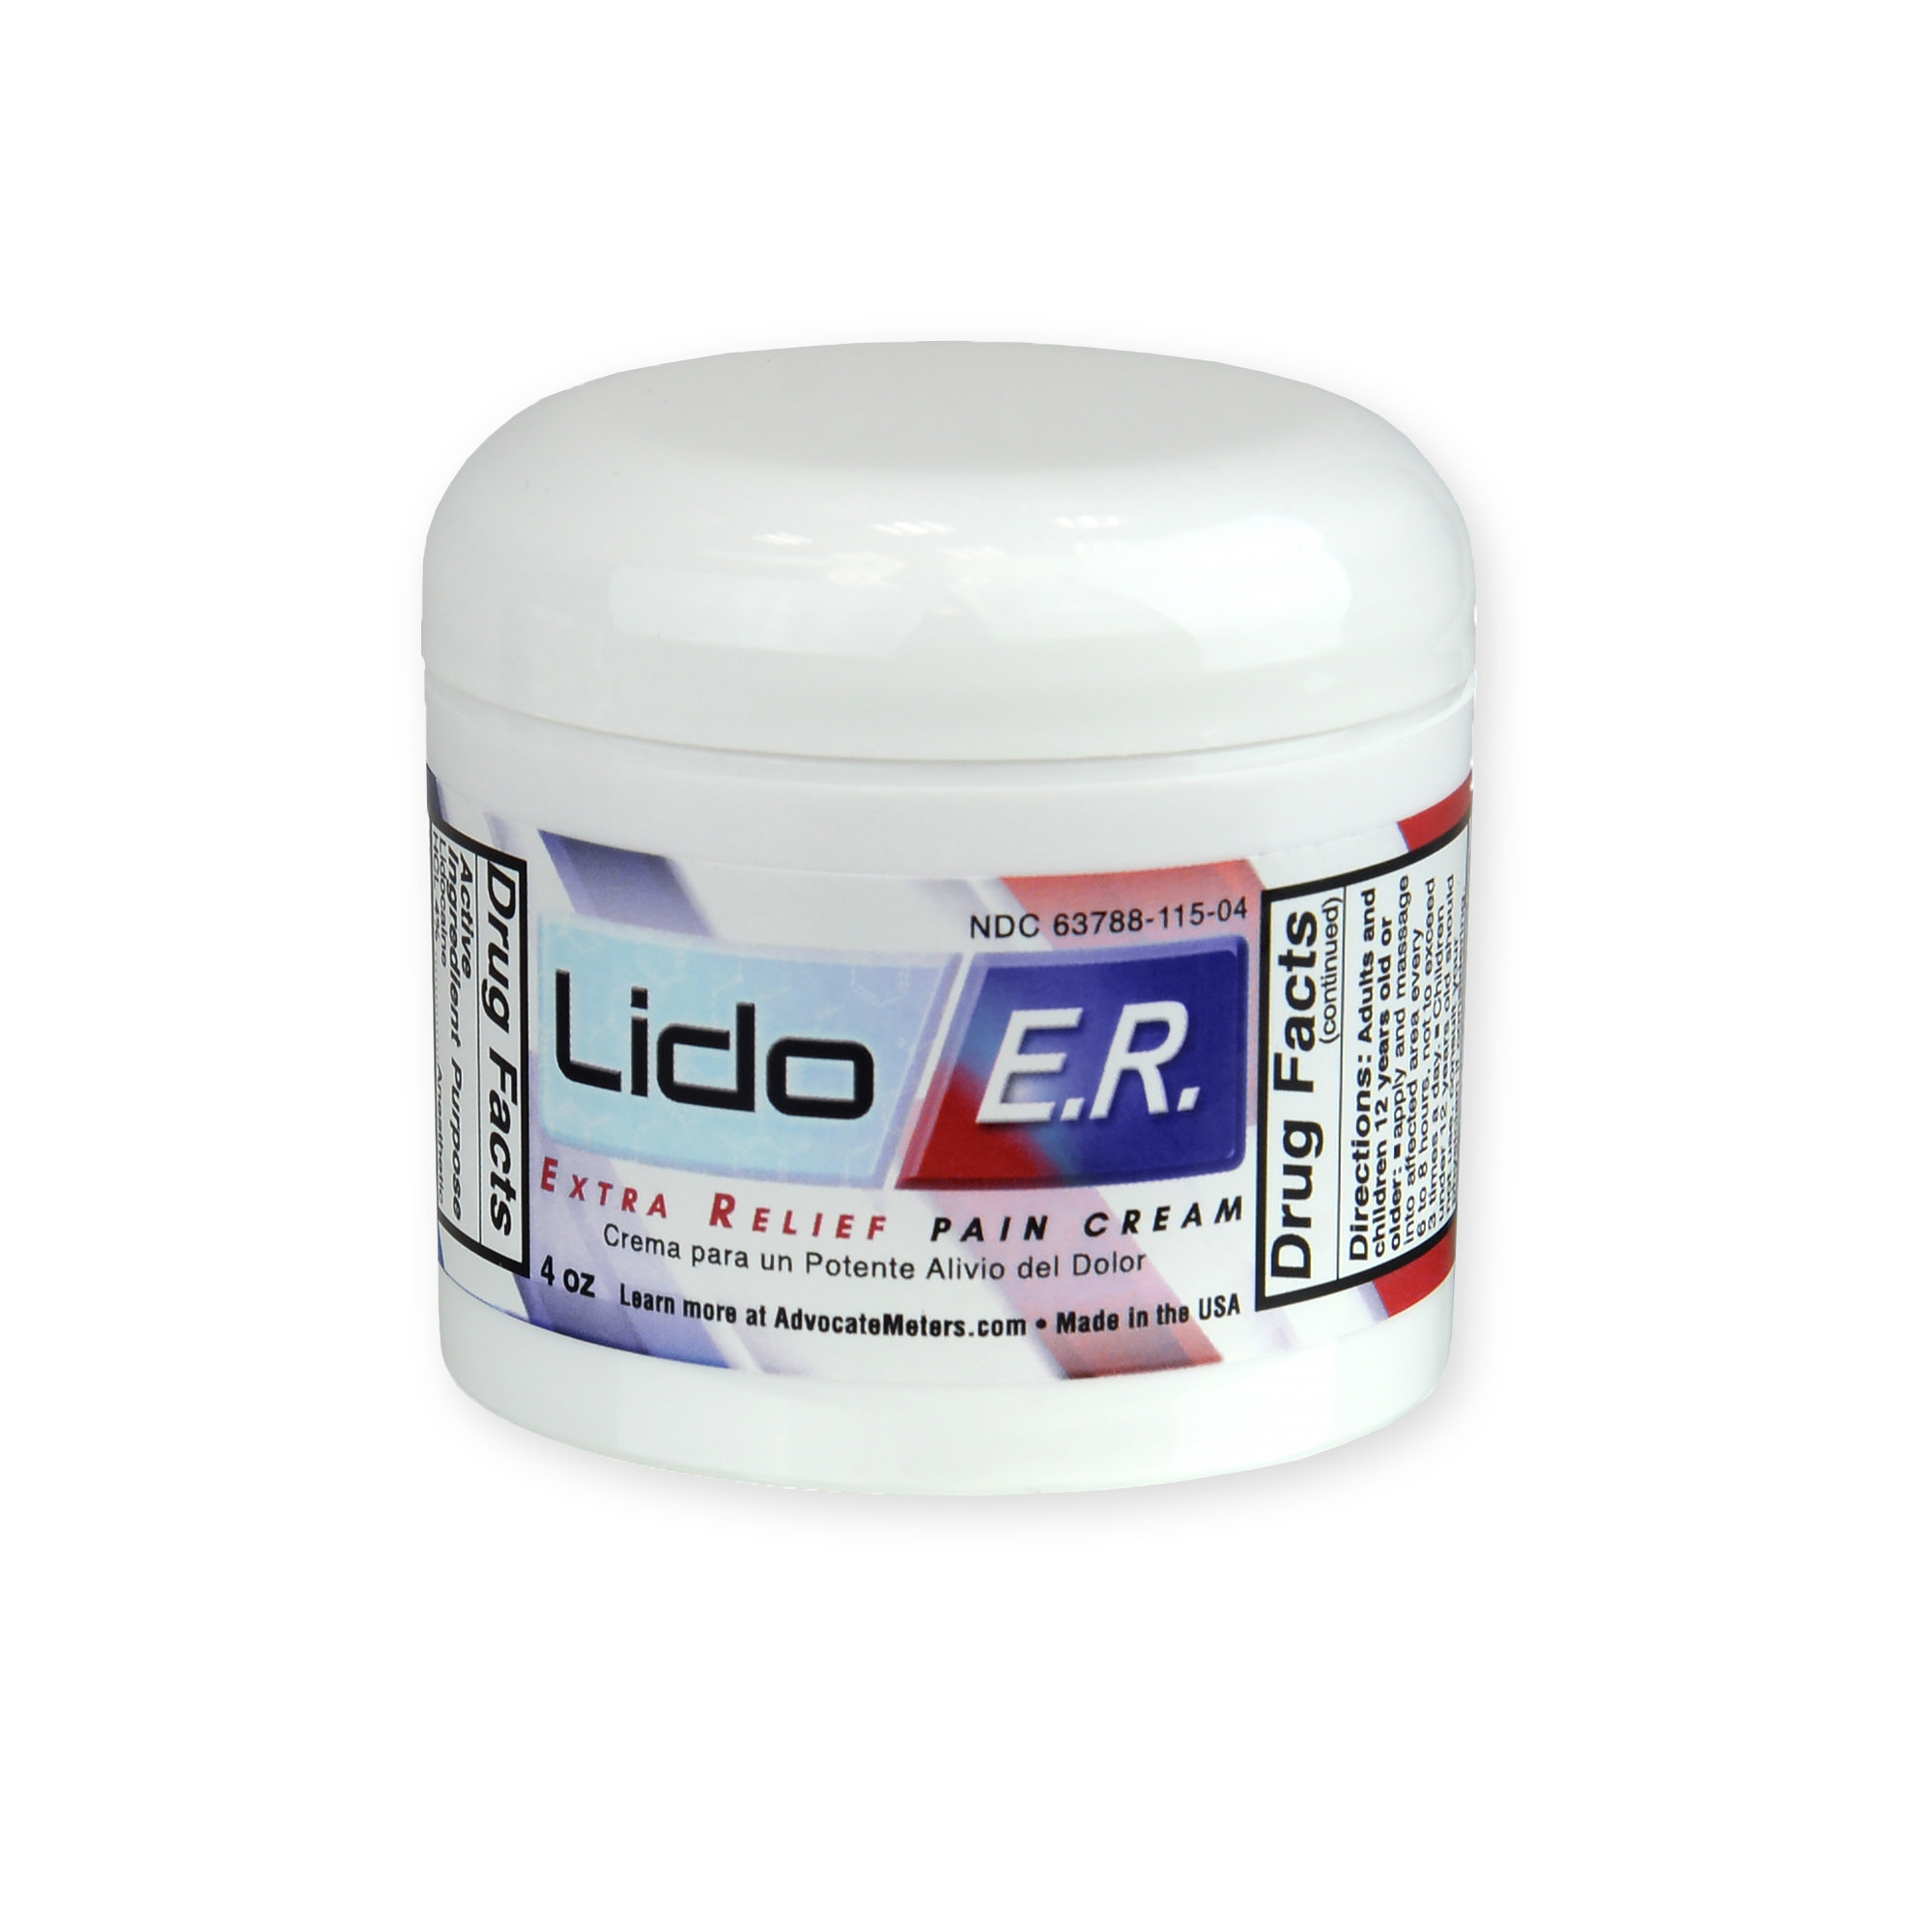 Lido E.R. Extra Relief Pain Cream